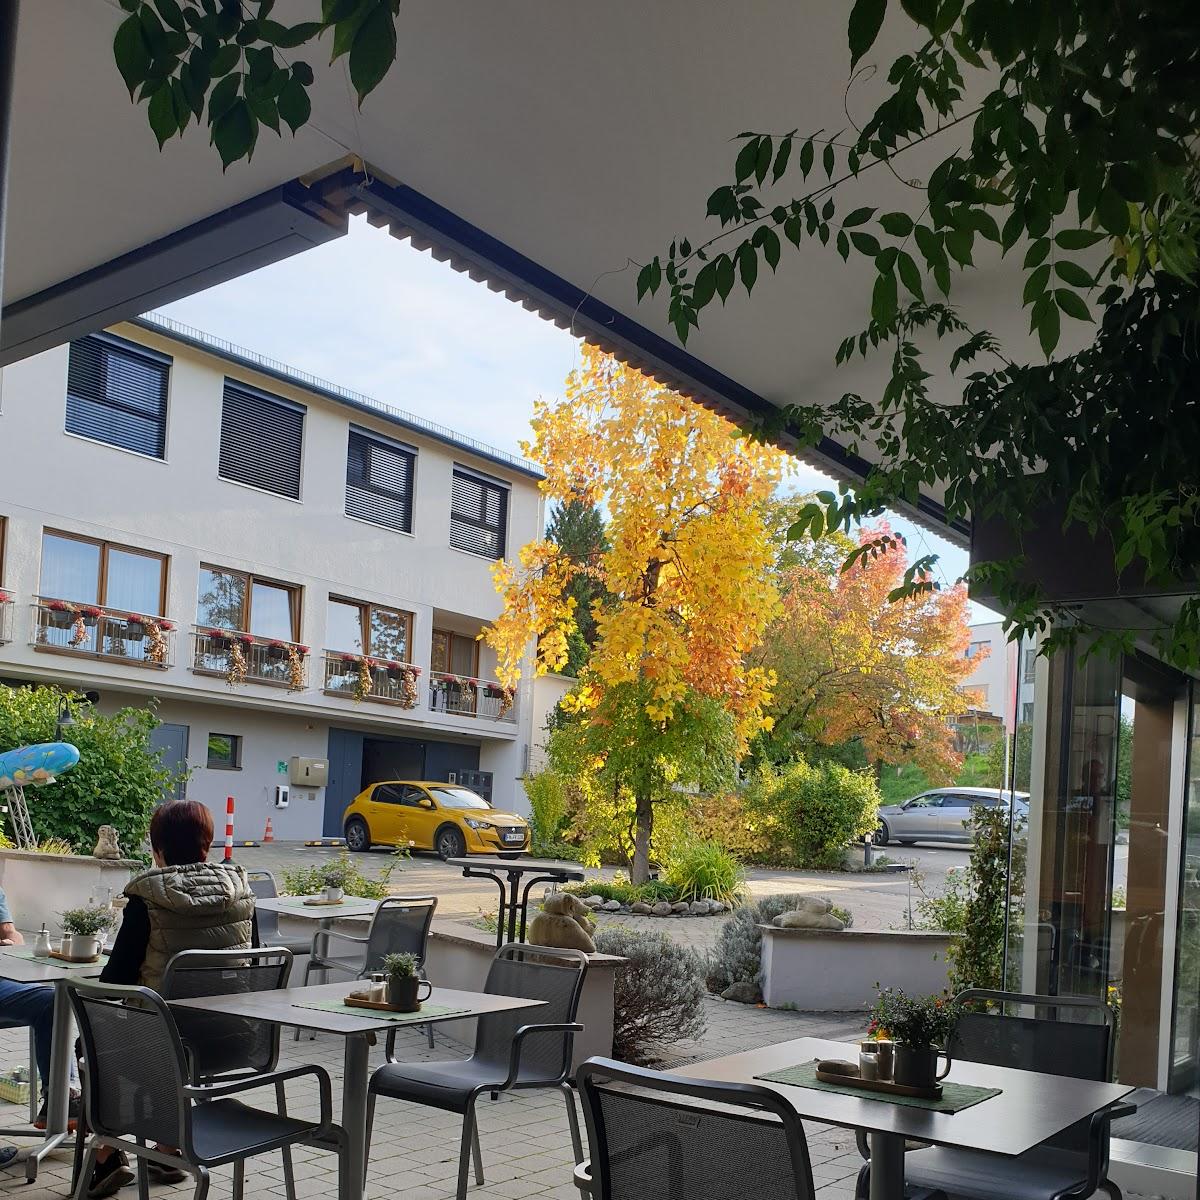 Restaurant "Restaurant Knoblauch" in Friedrichshafen